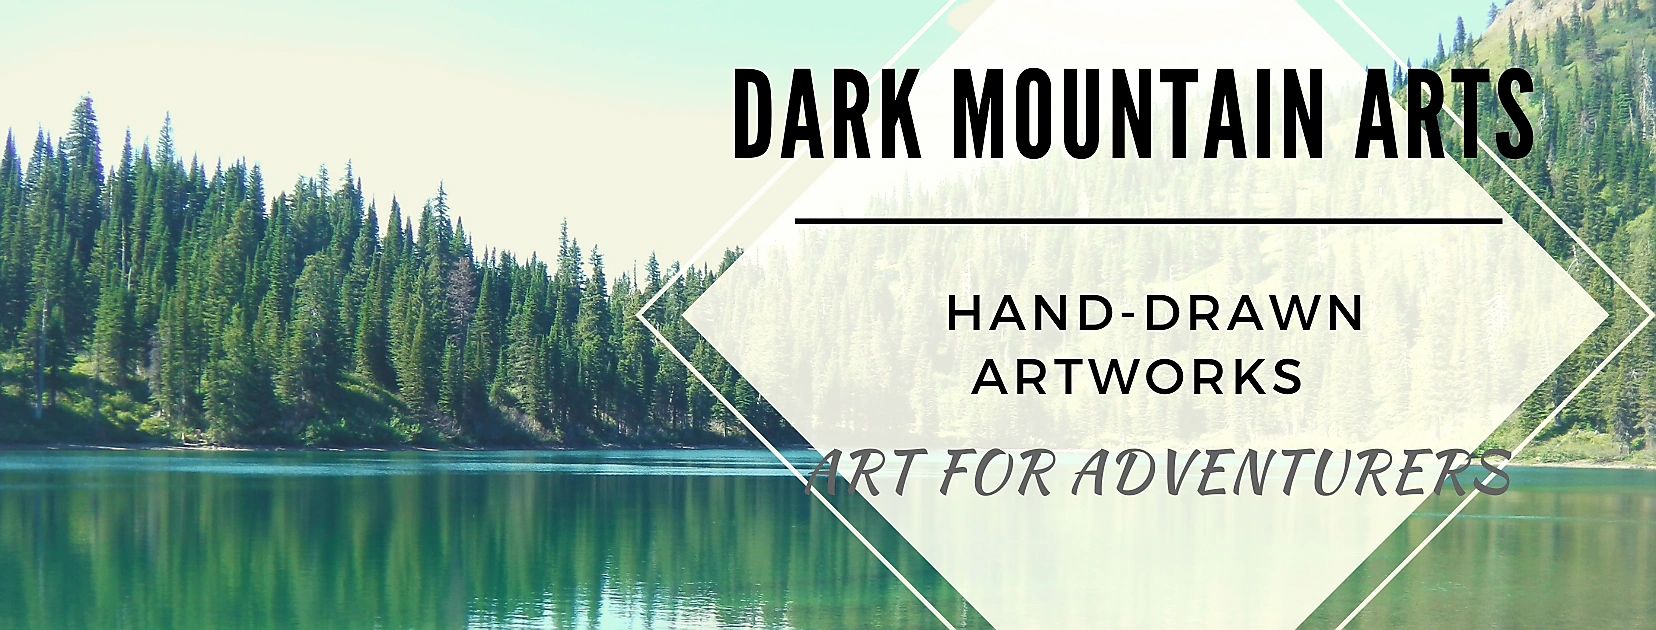 Dark Mountain Arts